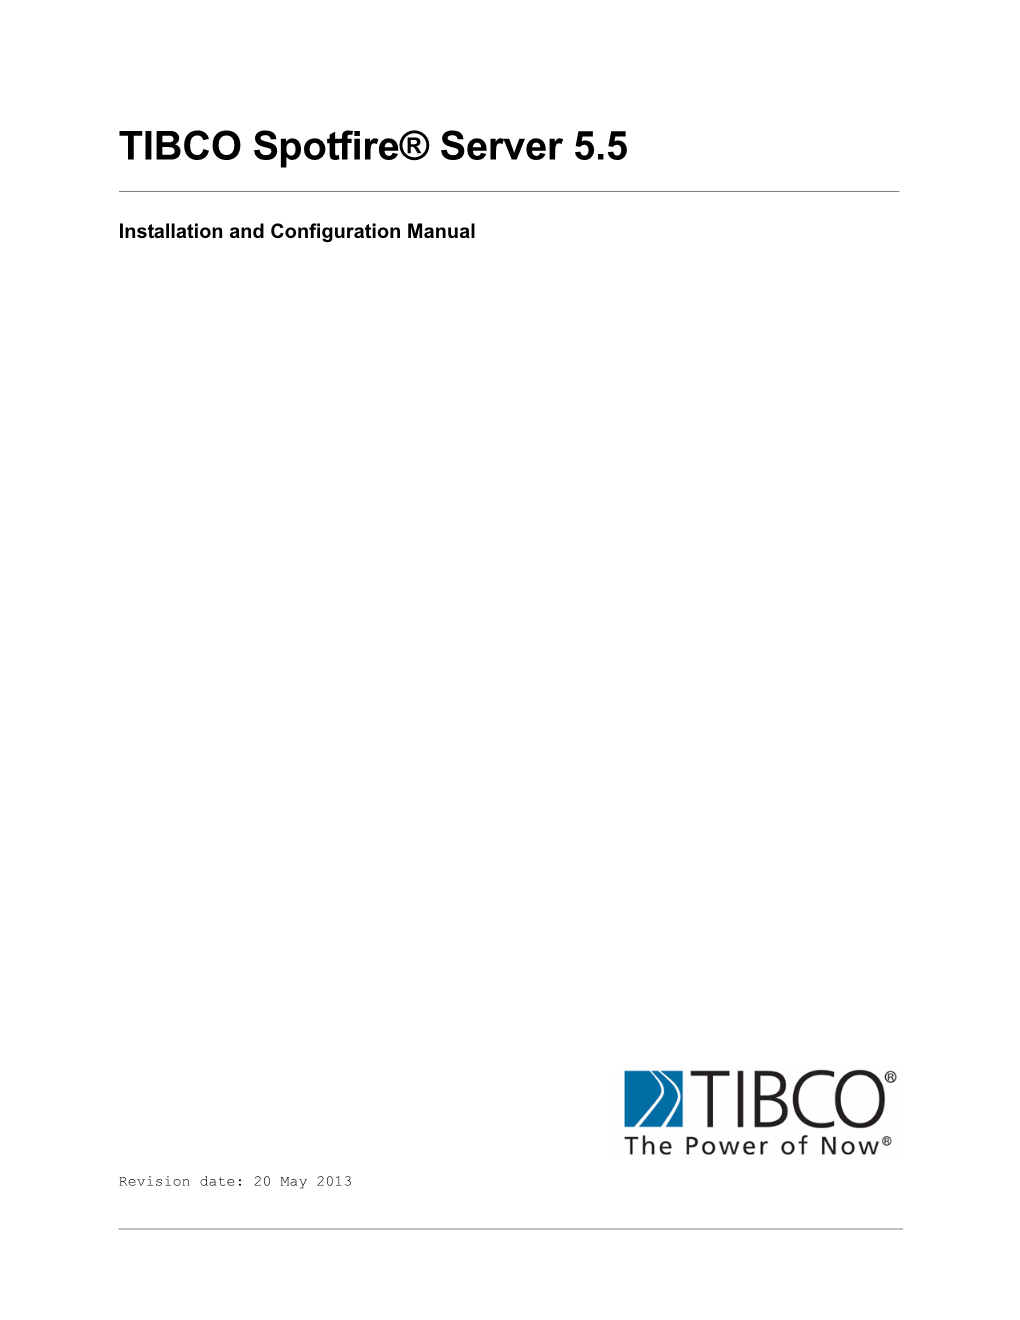 TIBCO Spotfire® Server 5.5